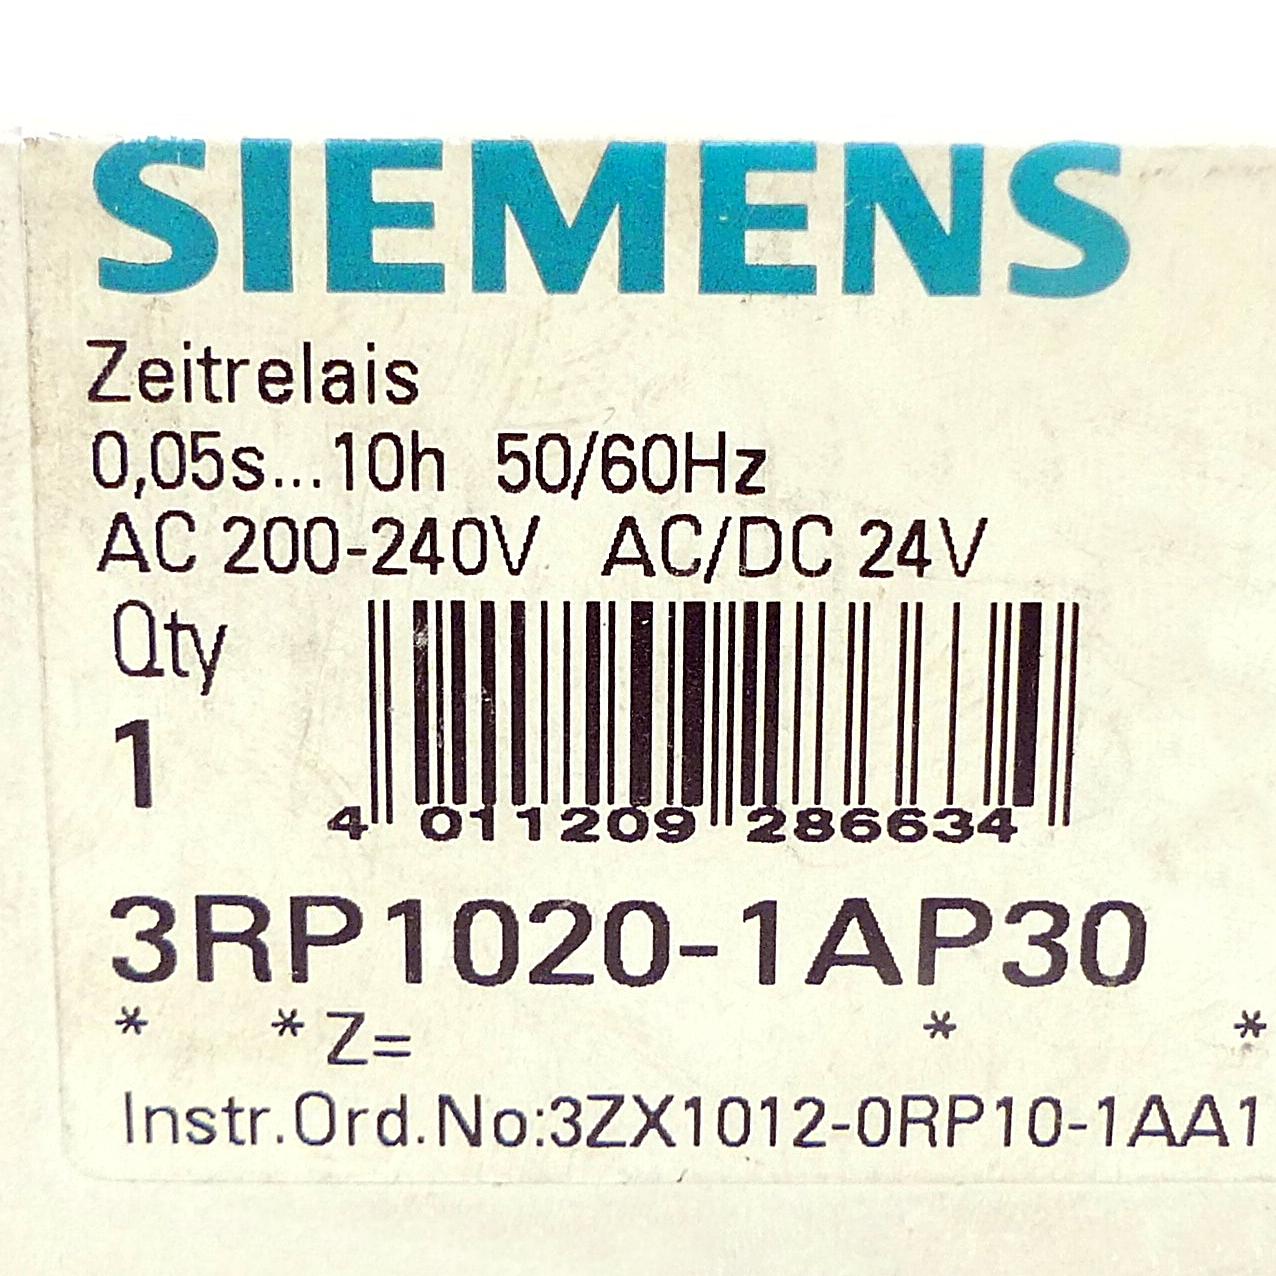 Produktfoto 2 von SIEMENS Zeitrelais 3RP1020-1AP30